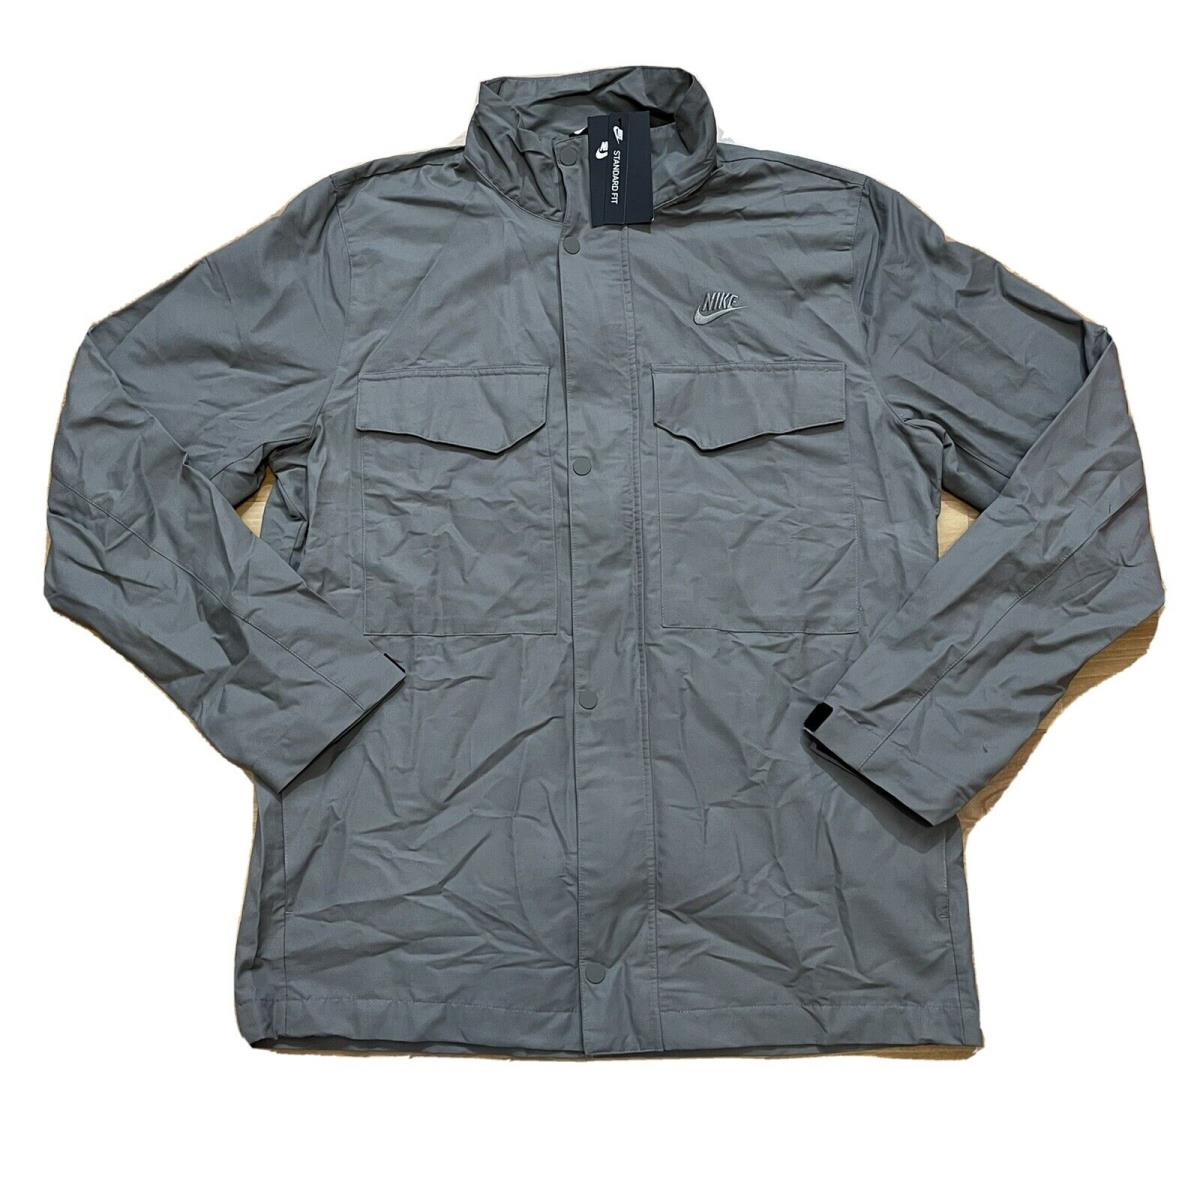 Nike Woven Sportswear M65 Men Size L Military Style Jacket Gray CZ9922-029